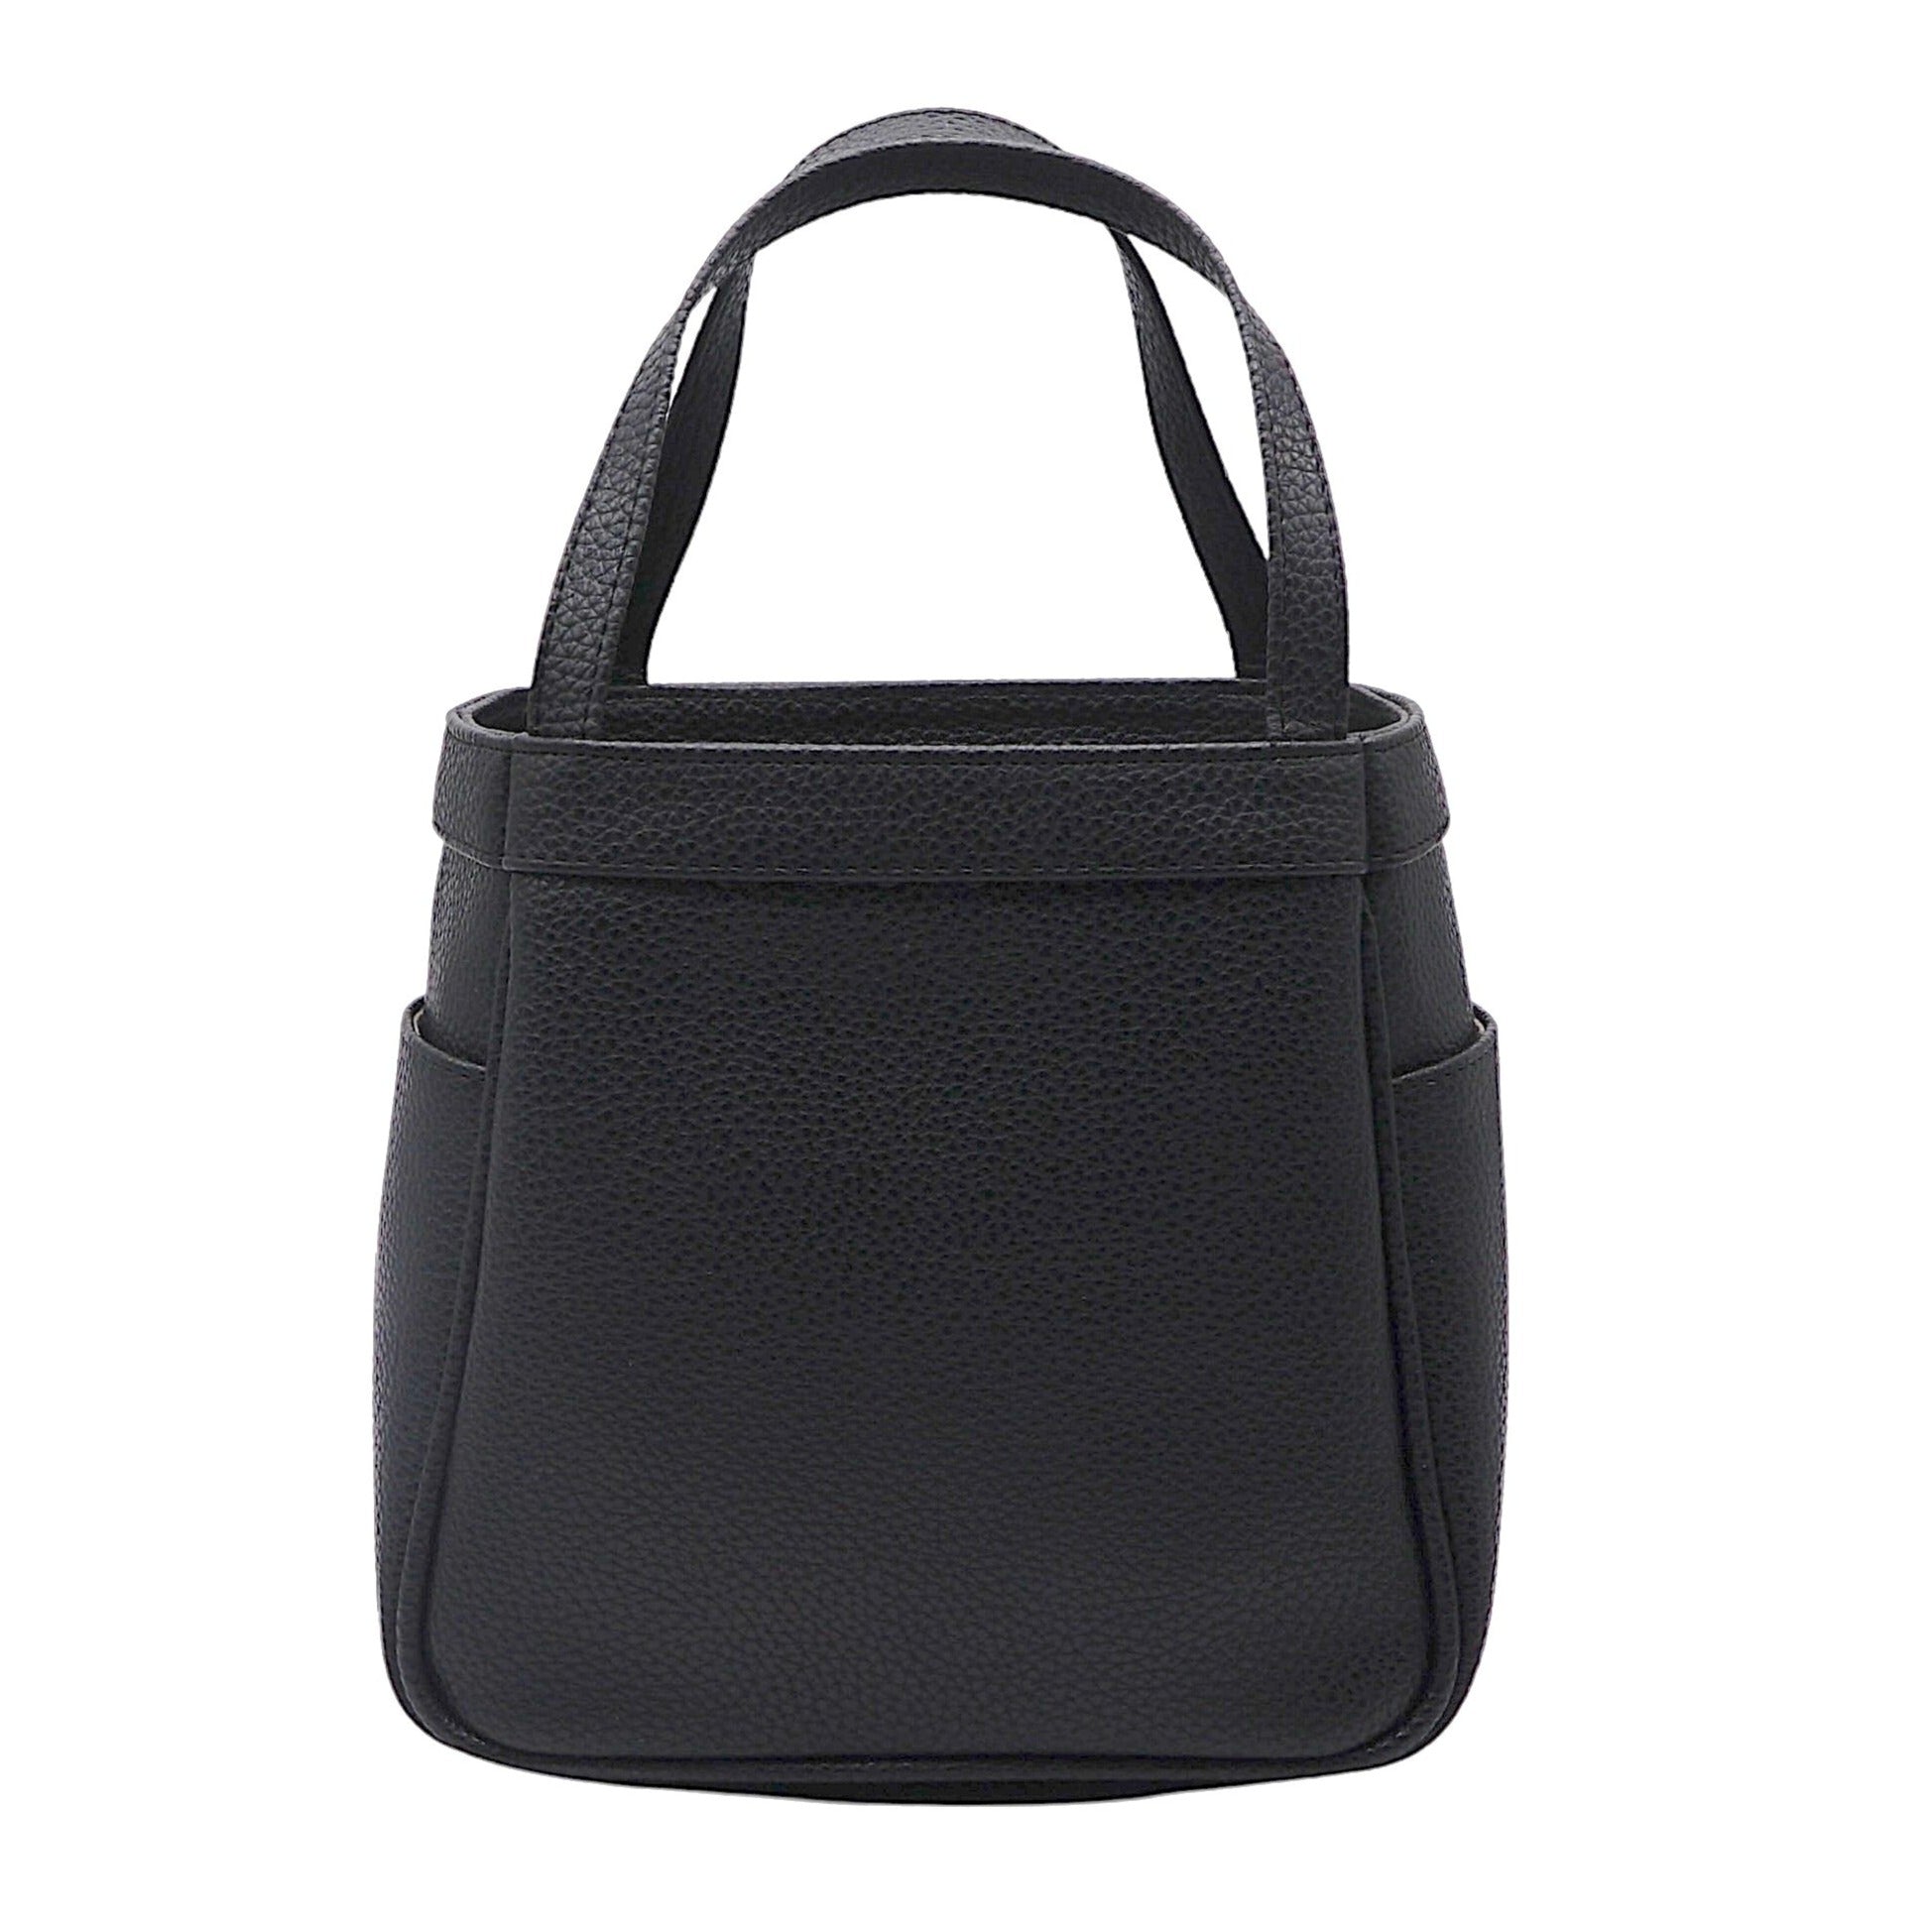 Jolie Black Handbag